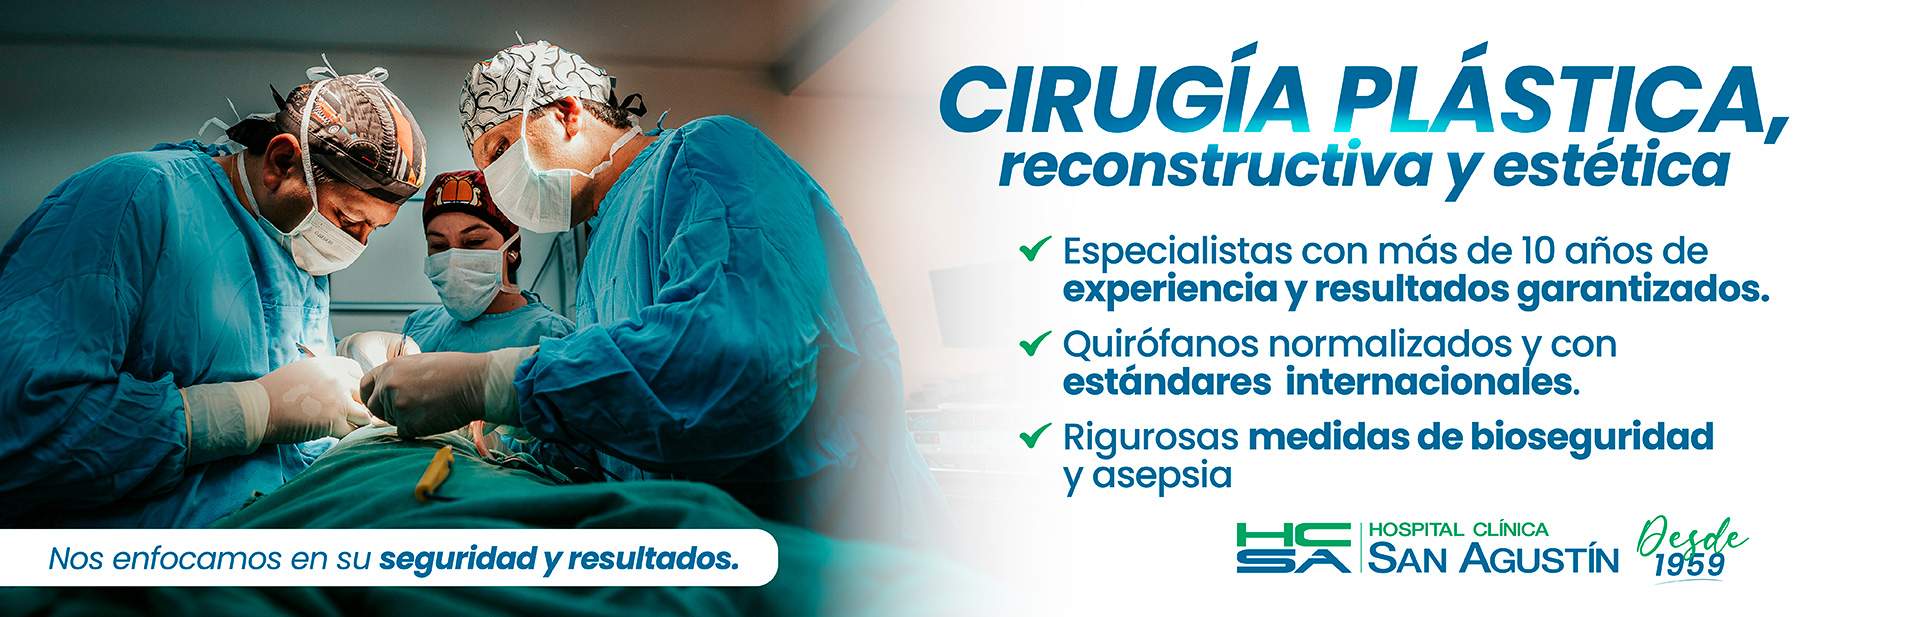 Cirugía Plástica reconstructiva y estética | Hospital Clínica San Agustín